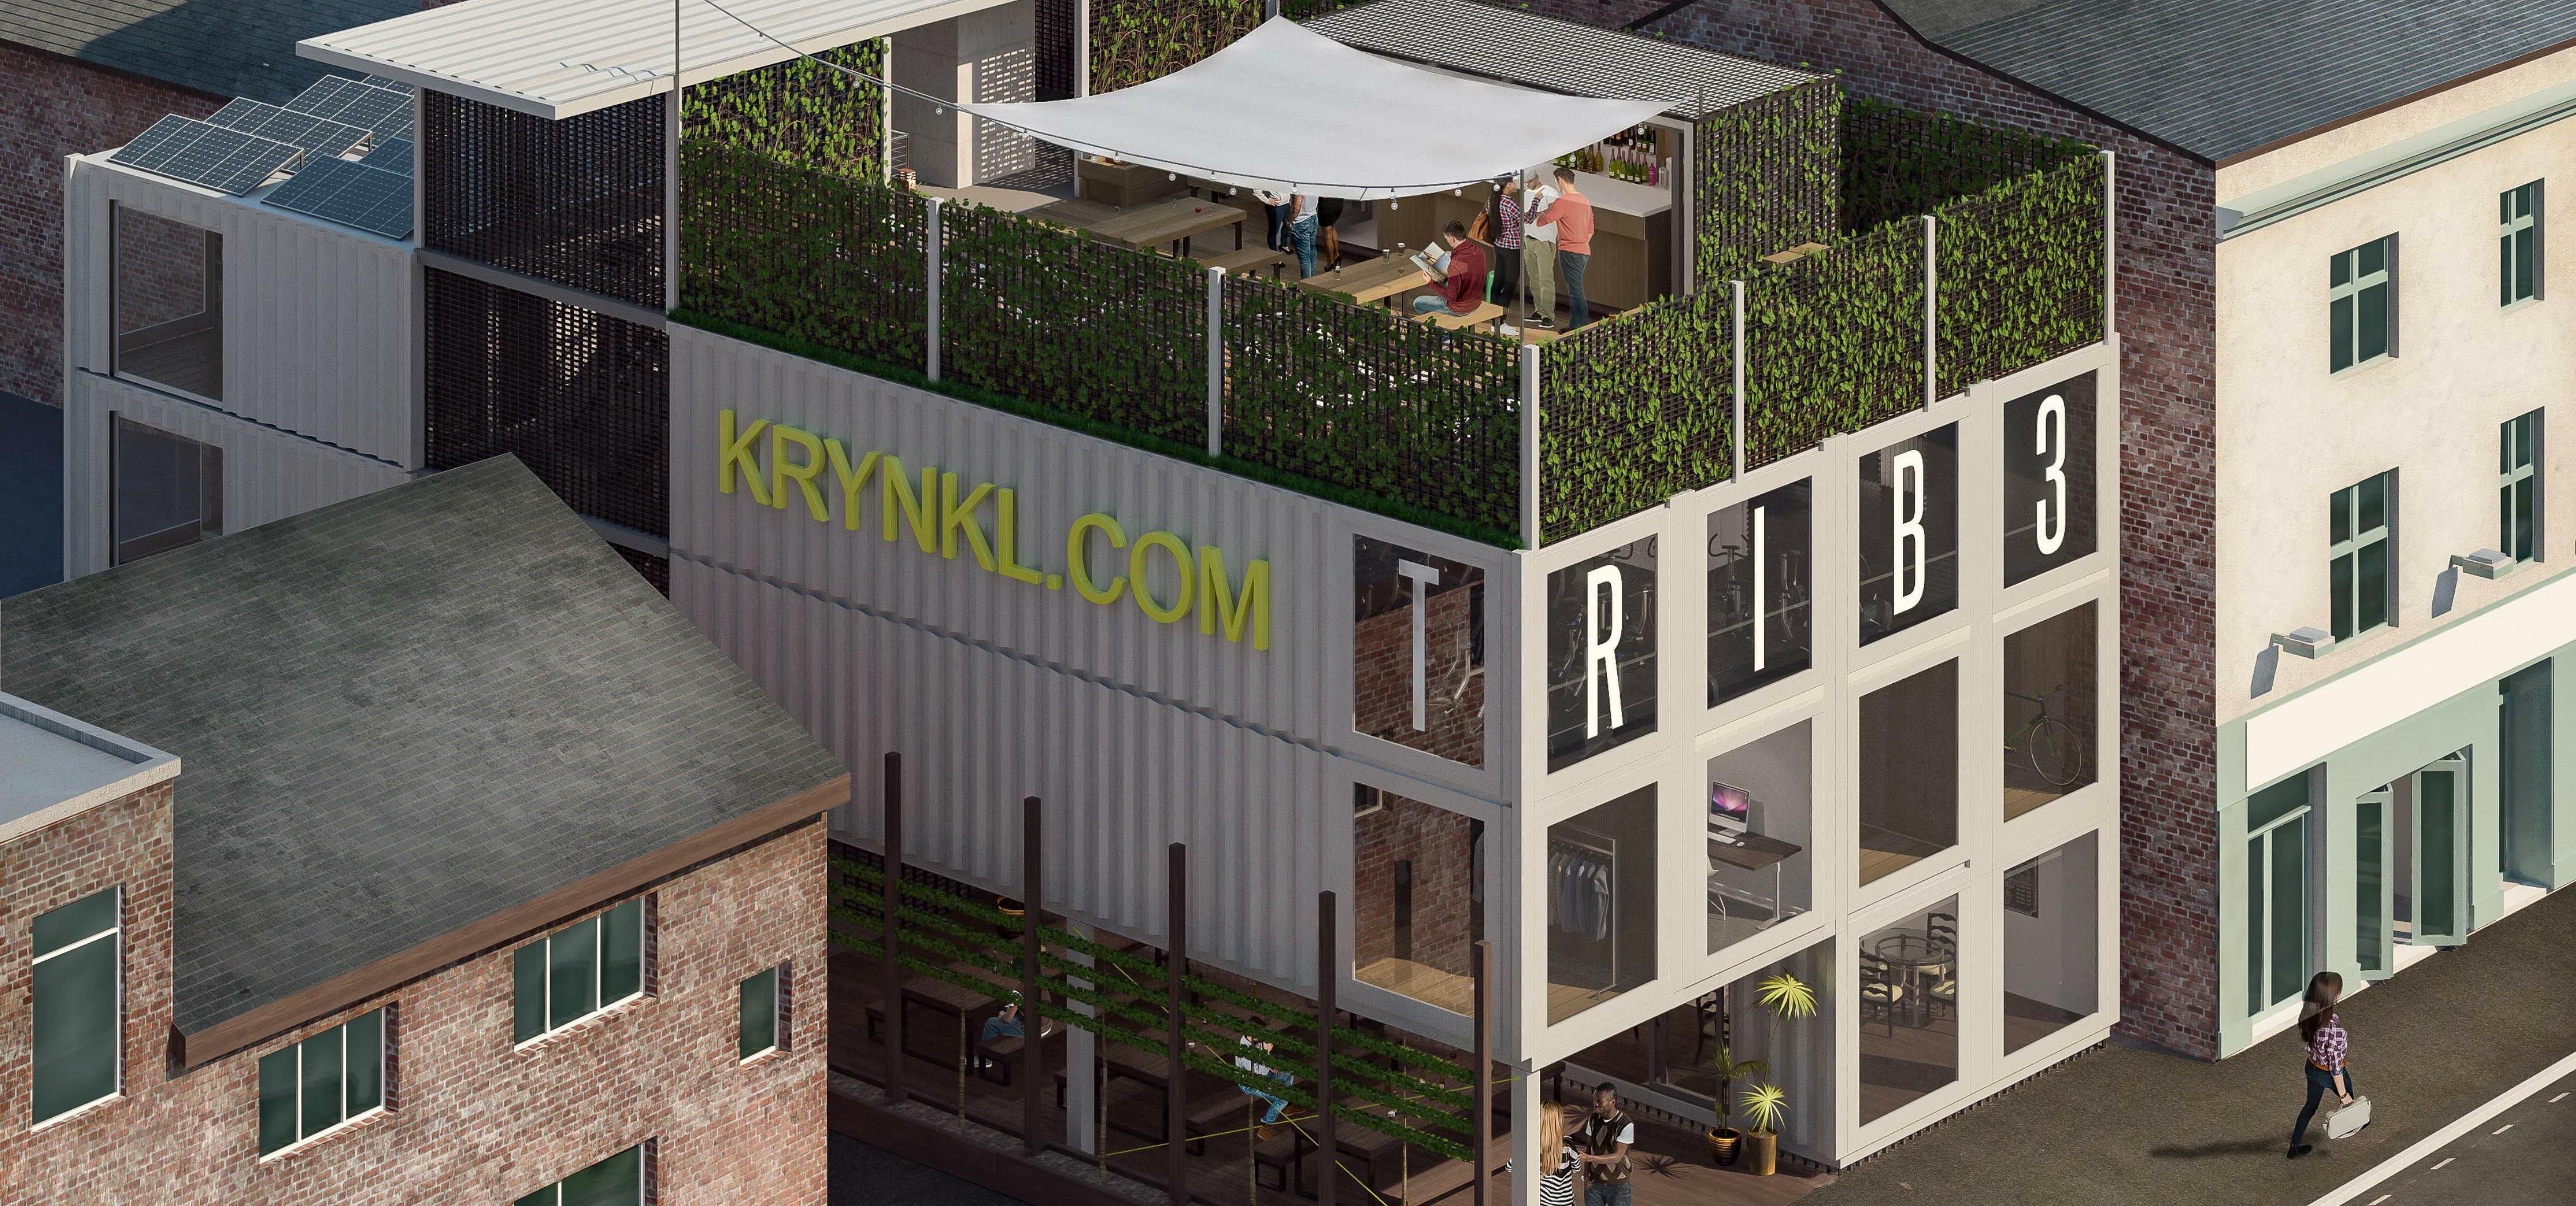 The Krynkl development in Sheffield